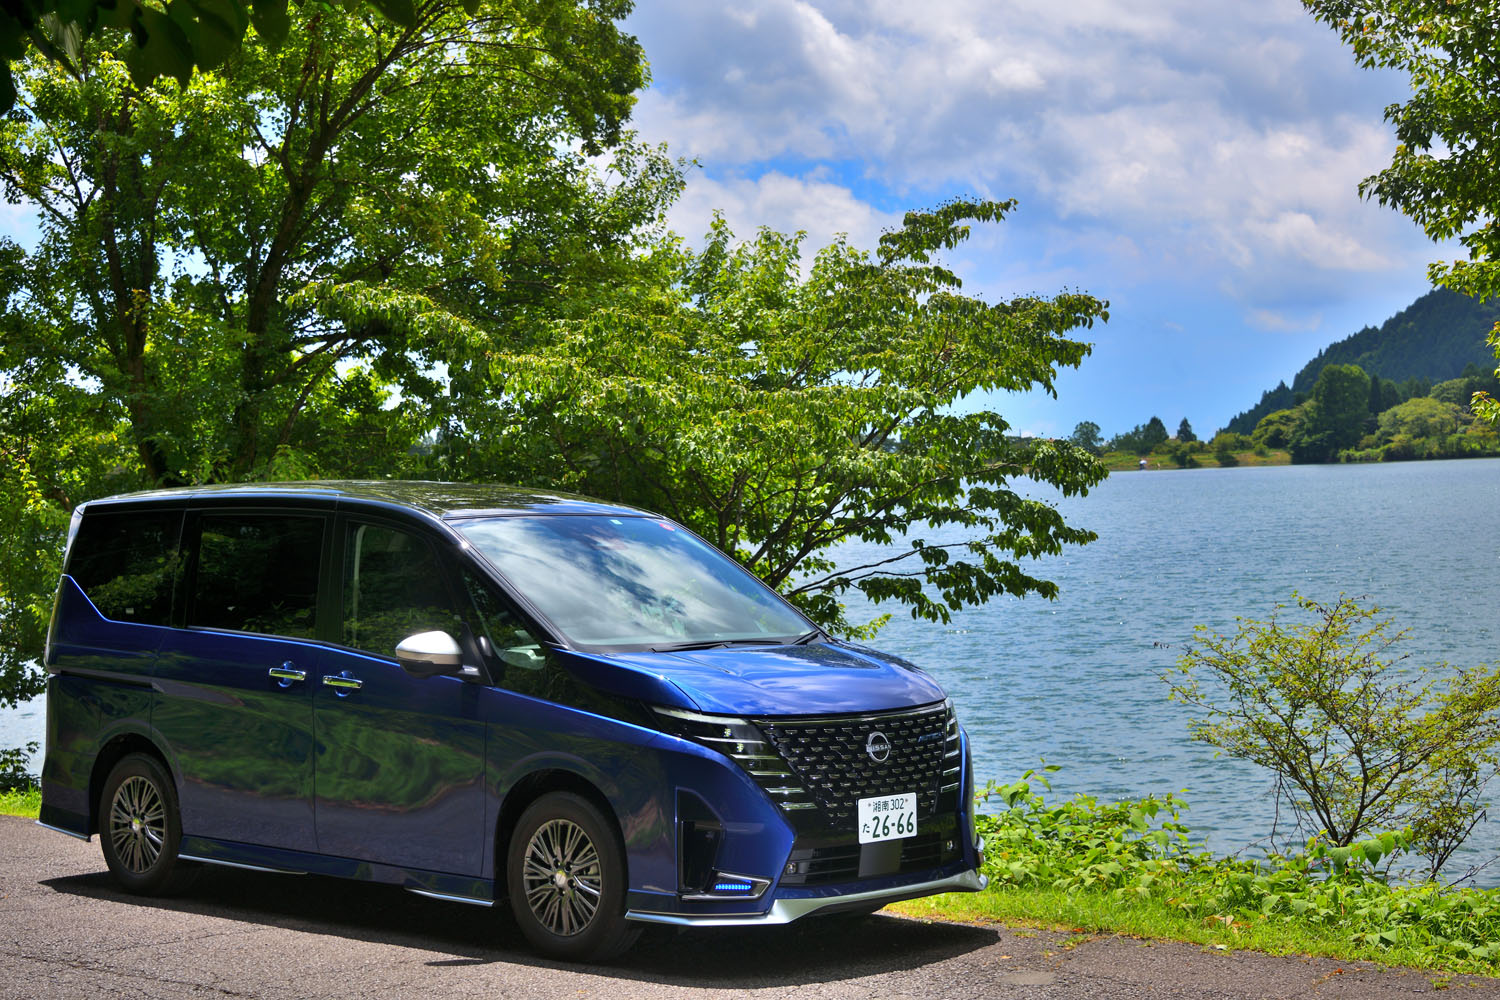 今回の試乗車は「日産セレナe-POWER AUTECH」。車両本体価格は415万0300円で、e-POWER車のなかでは「ルキシオン」に次いで2番目に高価なモデルだ。